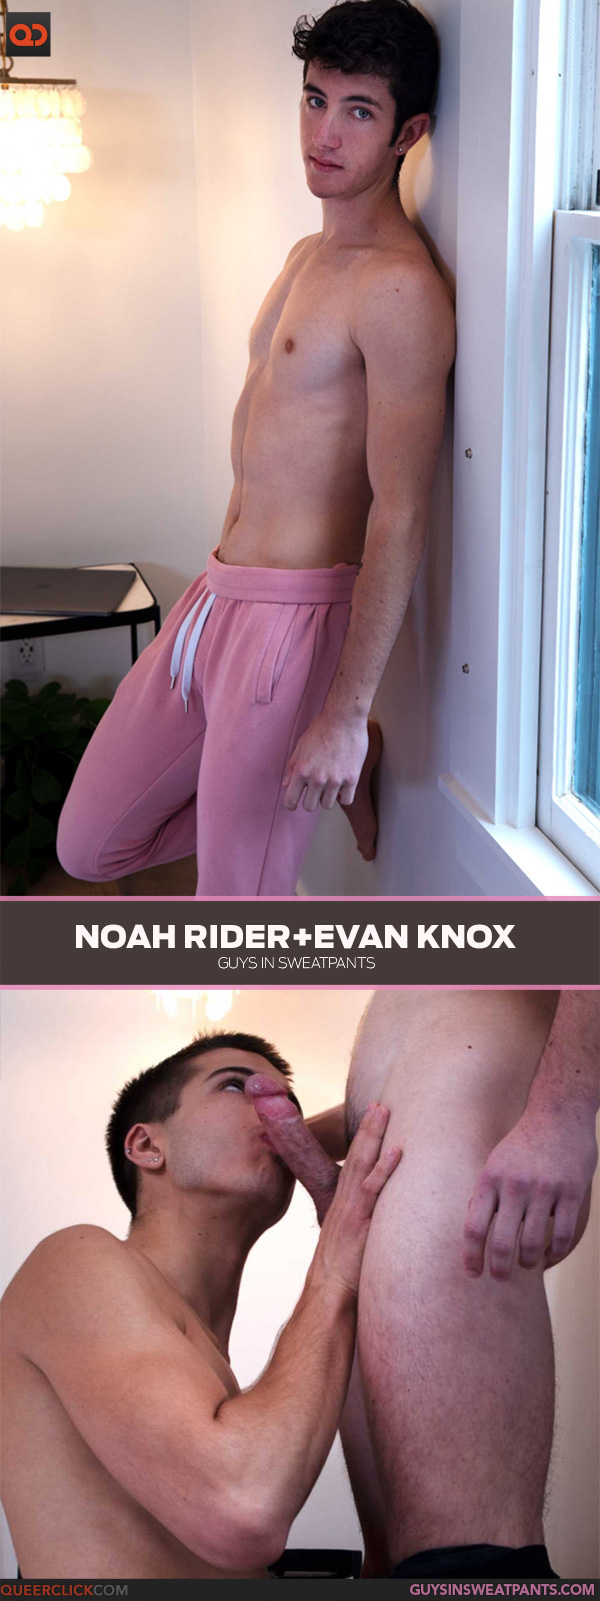 Guys in Sweatpants: Evan Knox and Noah Rider